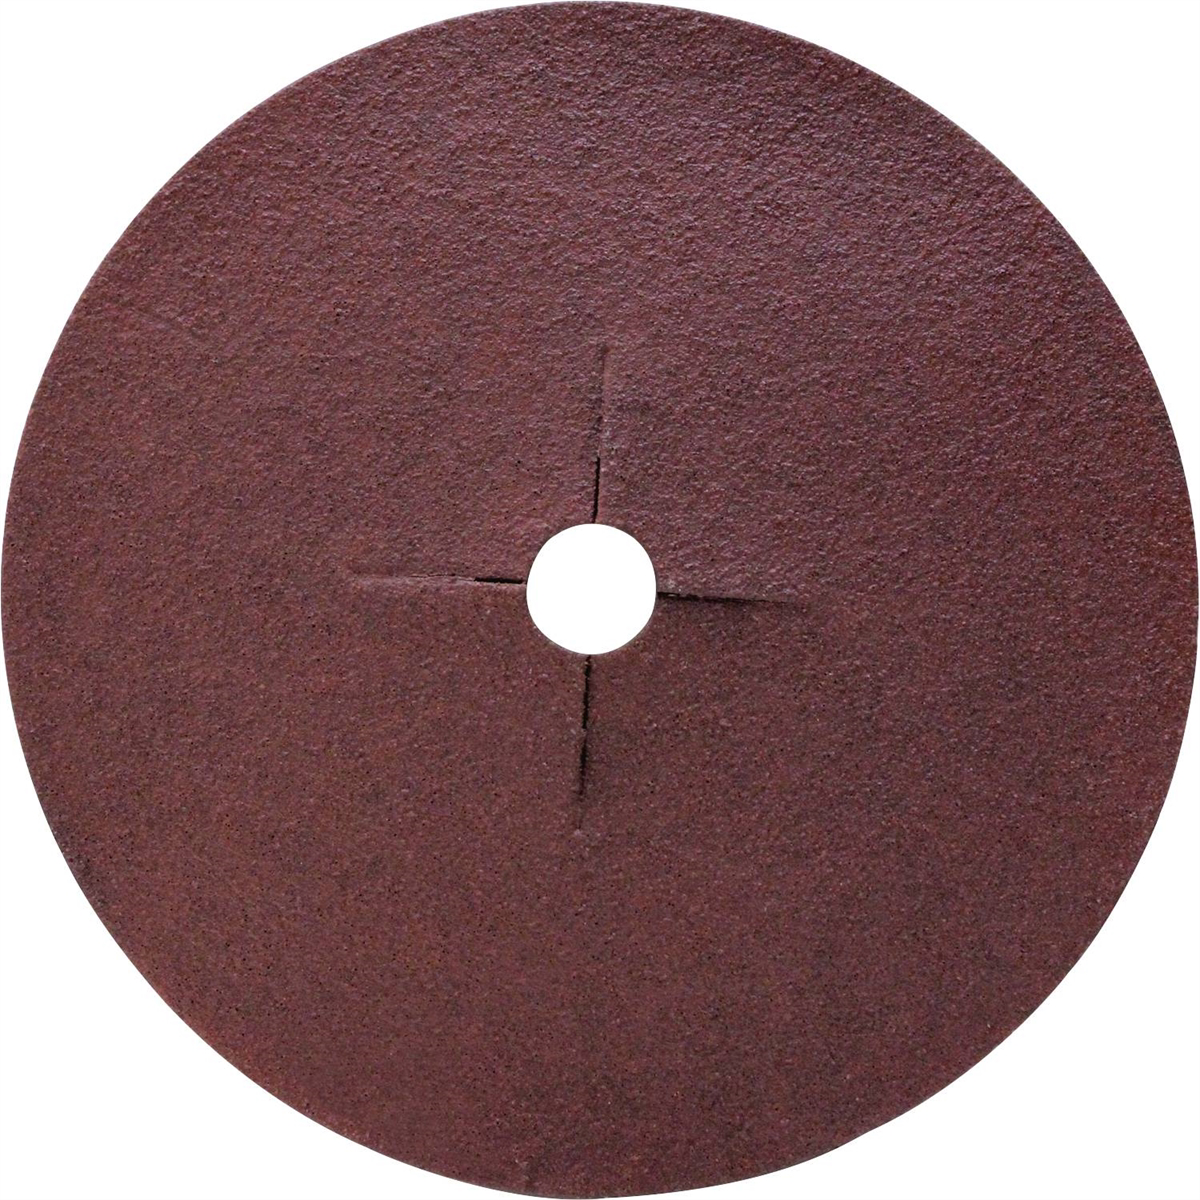 Abrasive Disc - 120 Grit - 5In x 1/2In